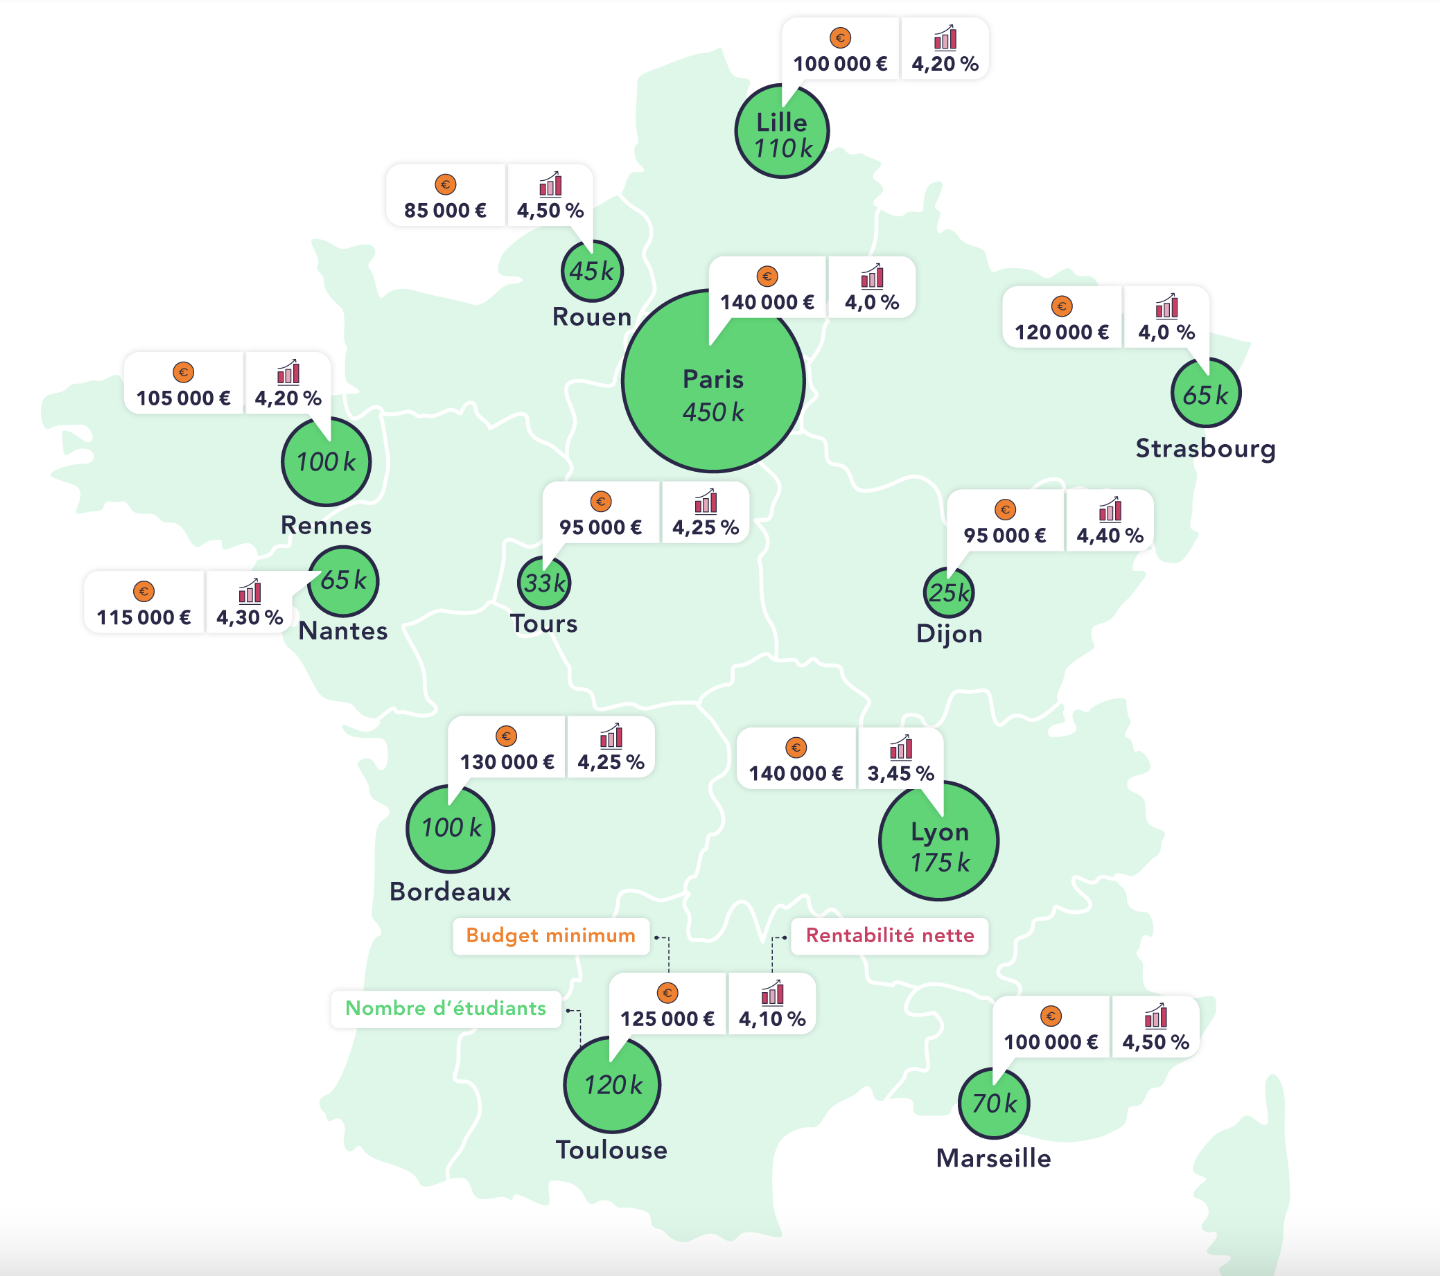 Carte de la France sur les colocations étudiantes